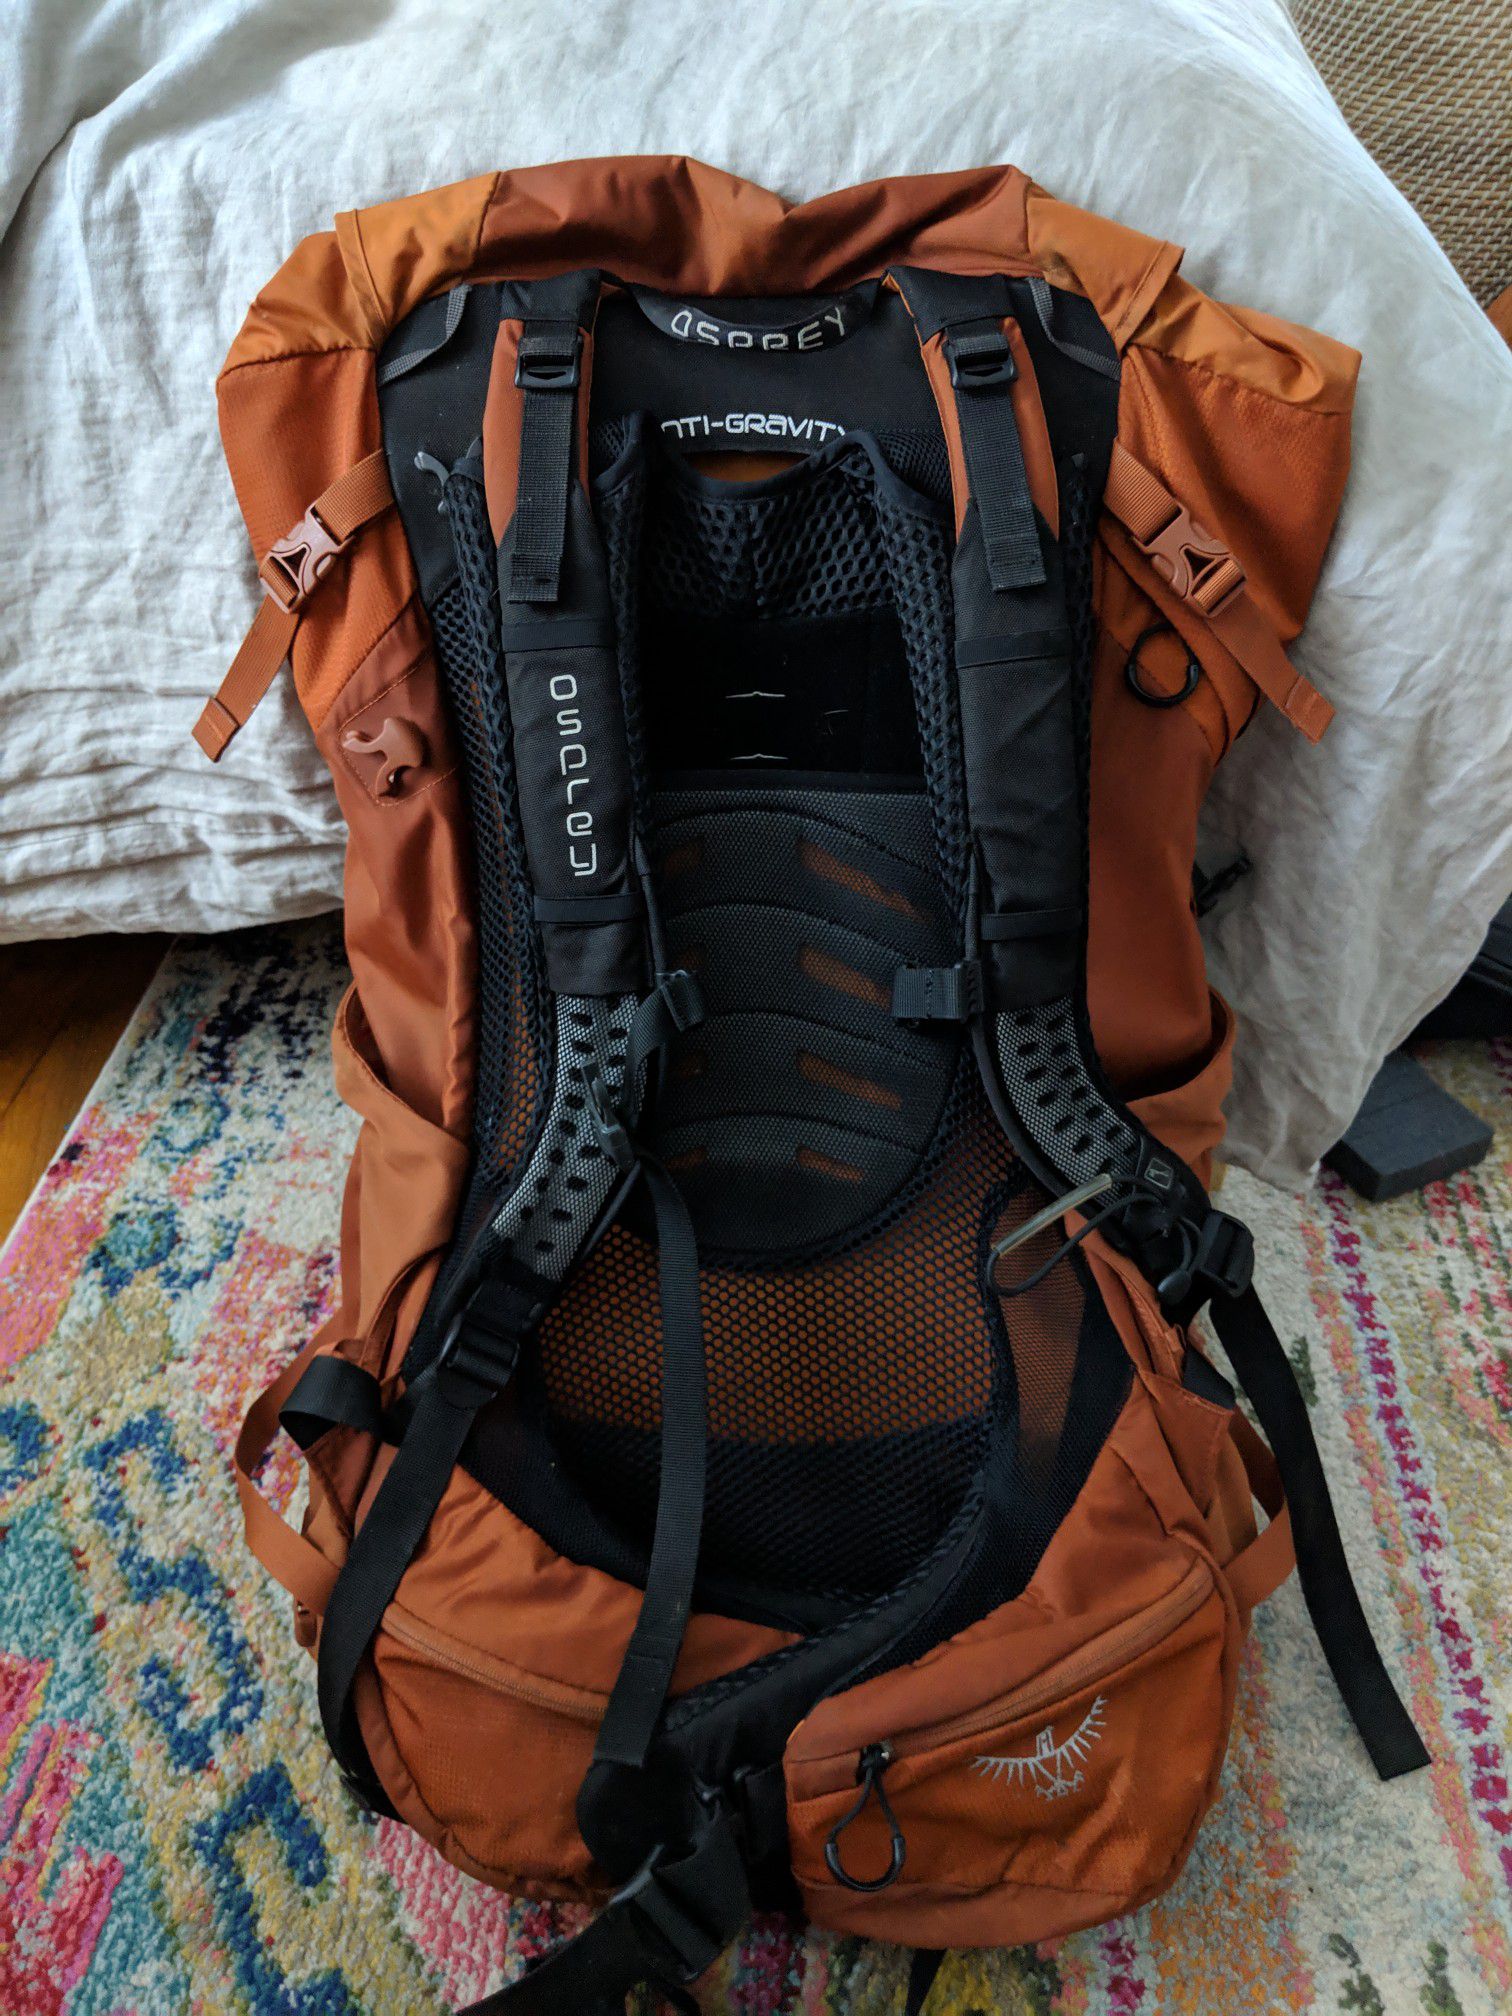 Osprey 60liter Hiking/backpacking backpack